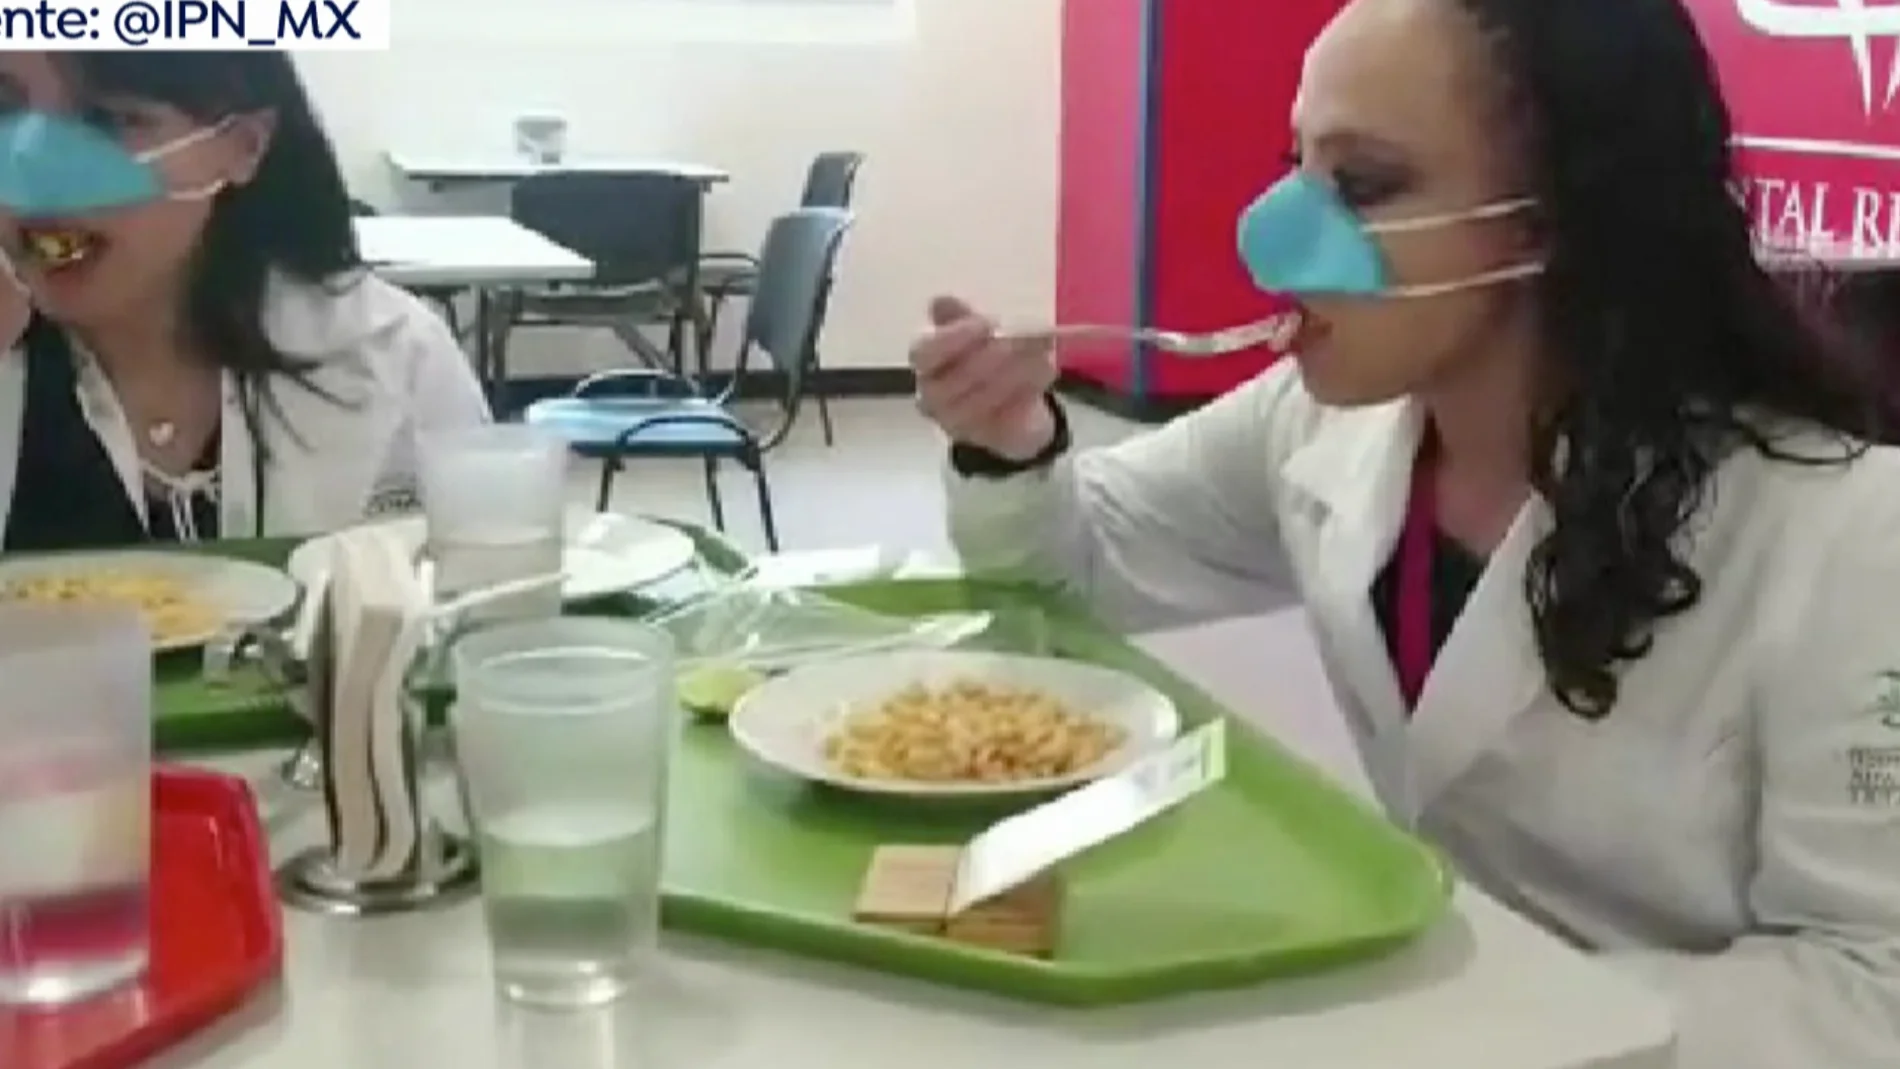 México inventa una mascarilla nasal para poder comer y beber seguros frente al coronavirus